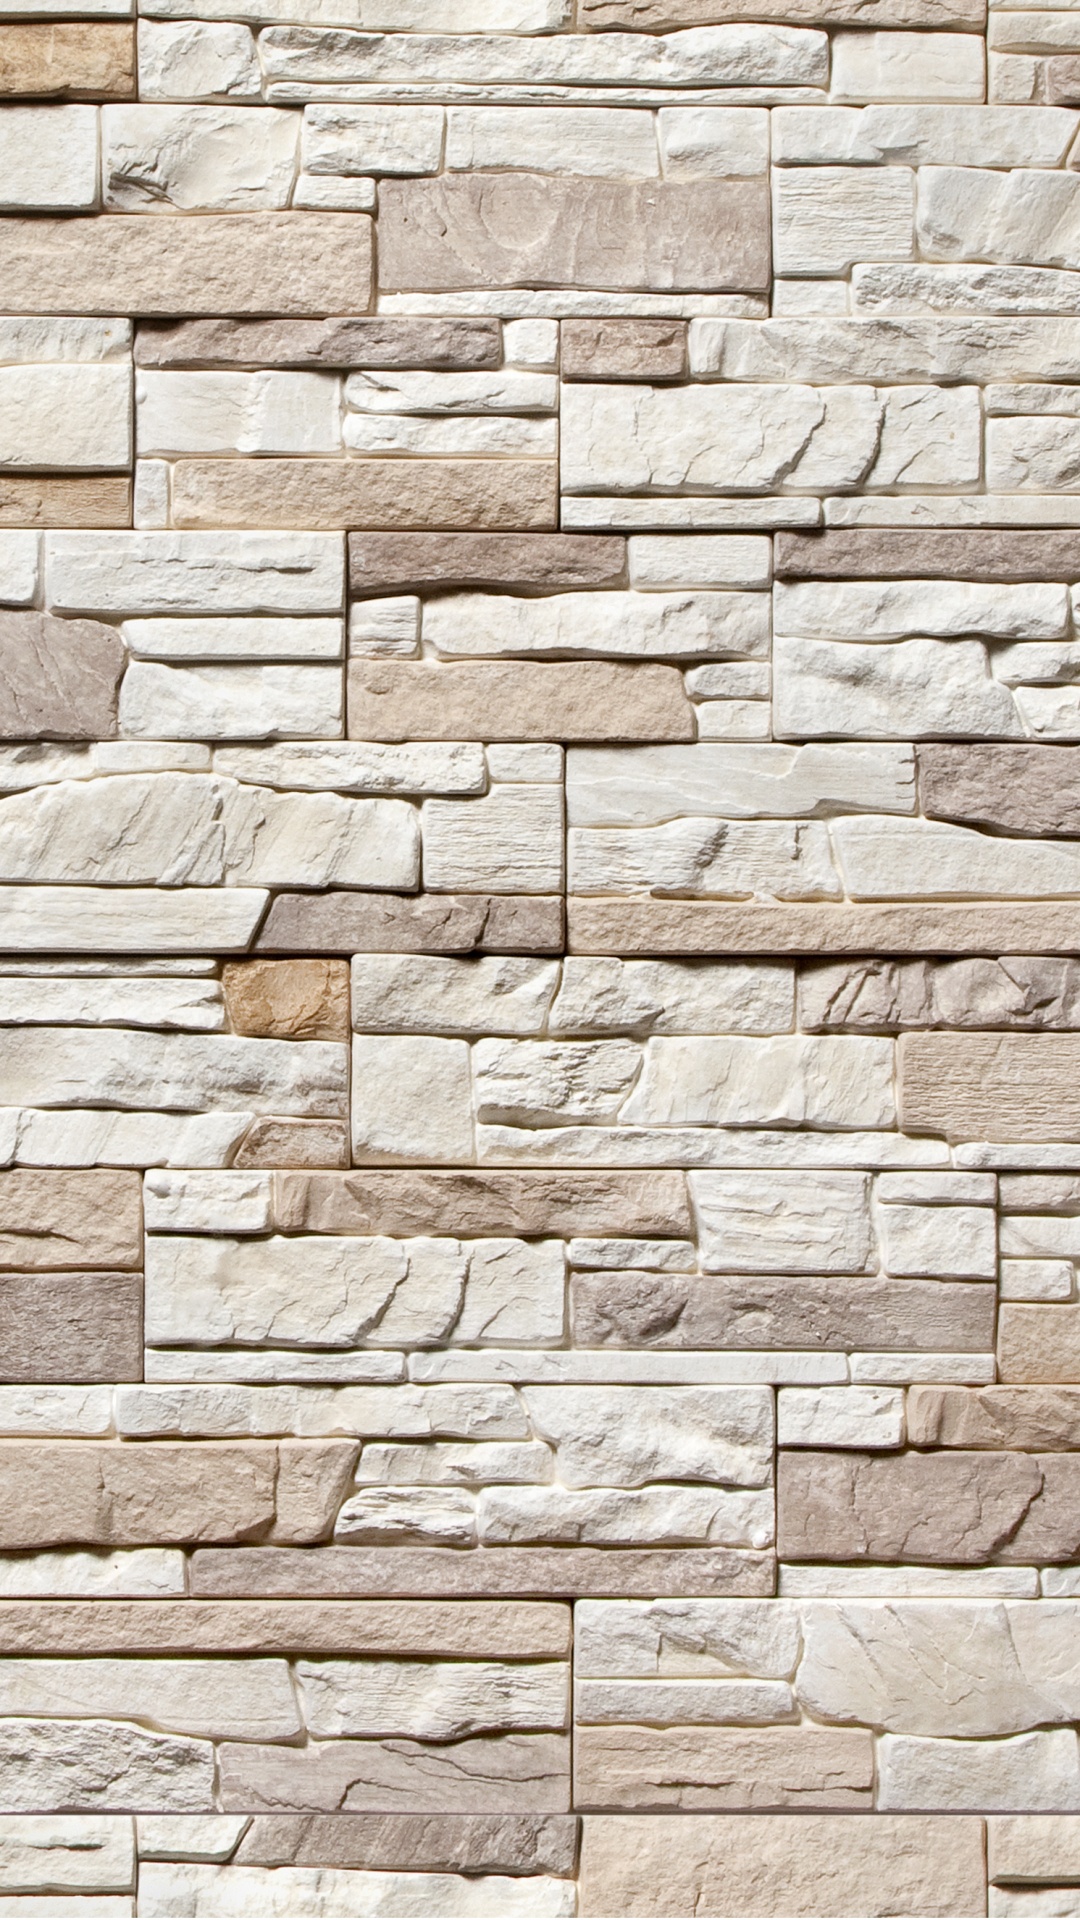 石壁, 正面, 砖, 砌砖, 建筑 壁纸 1080x1920 允许